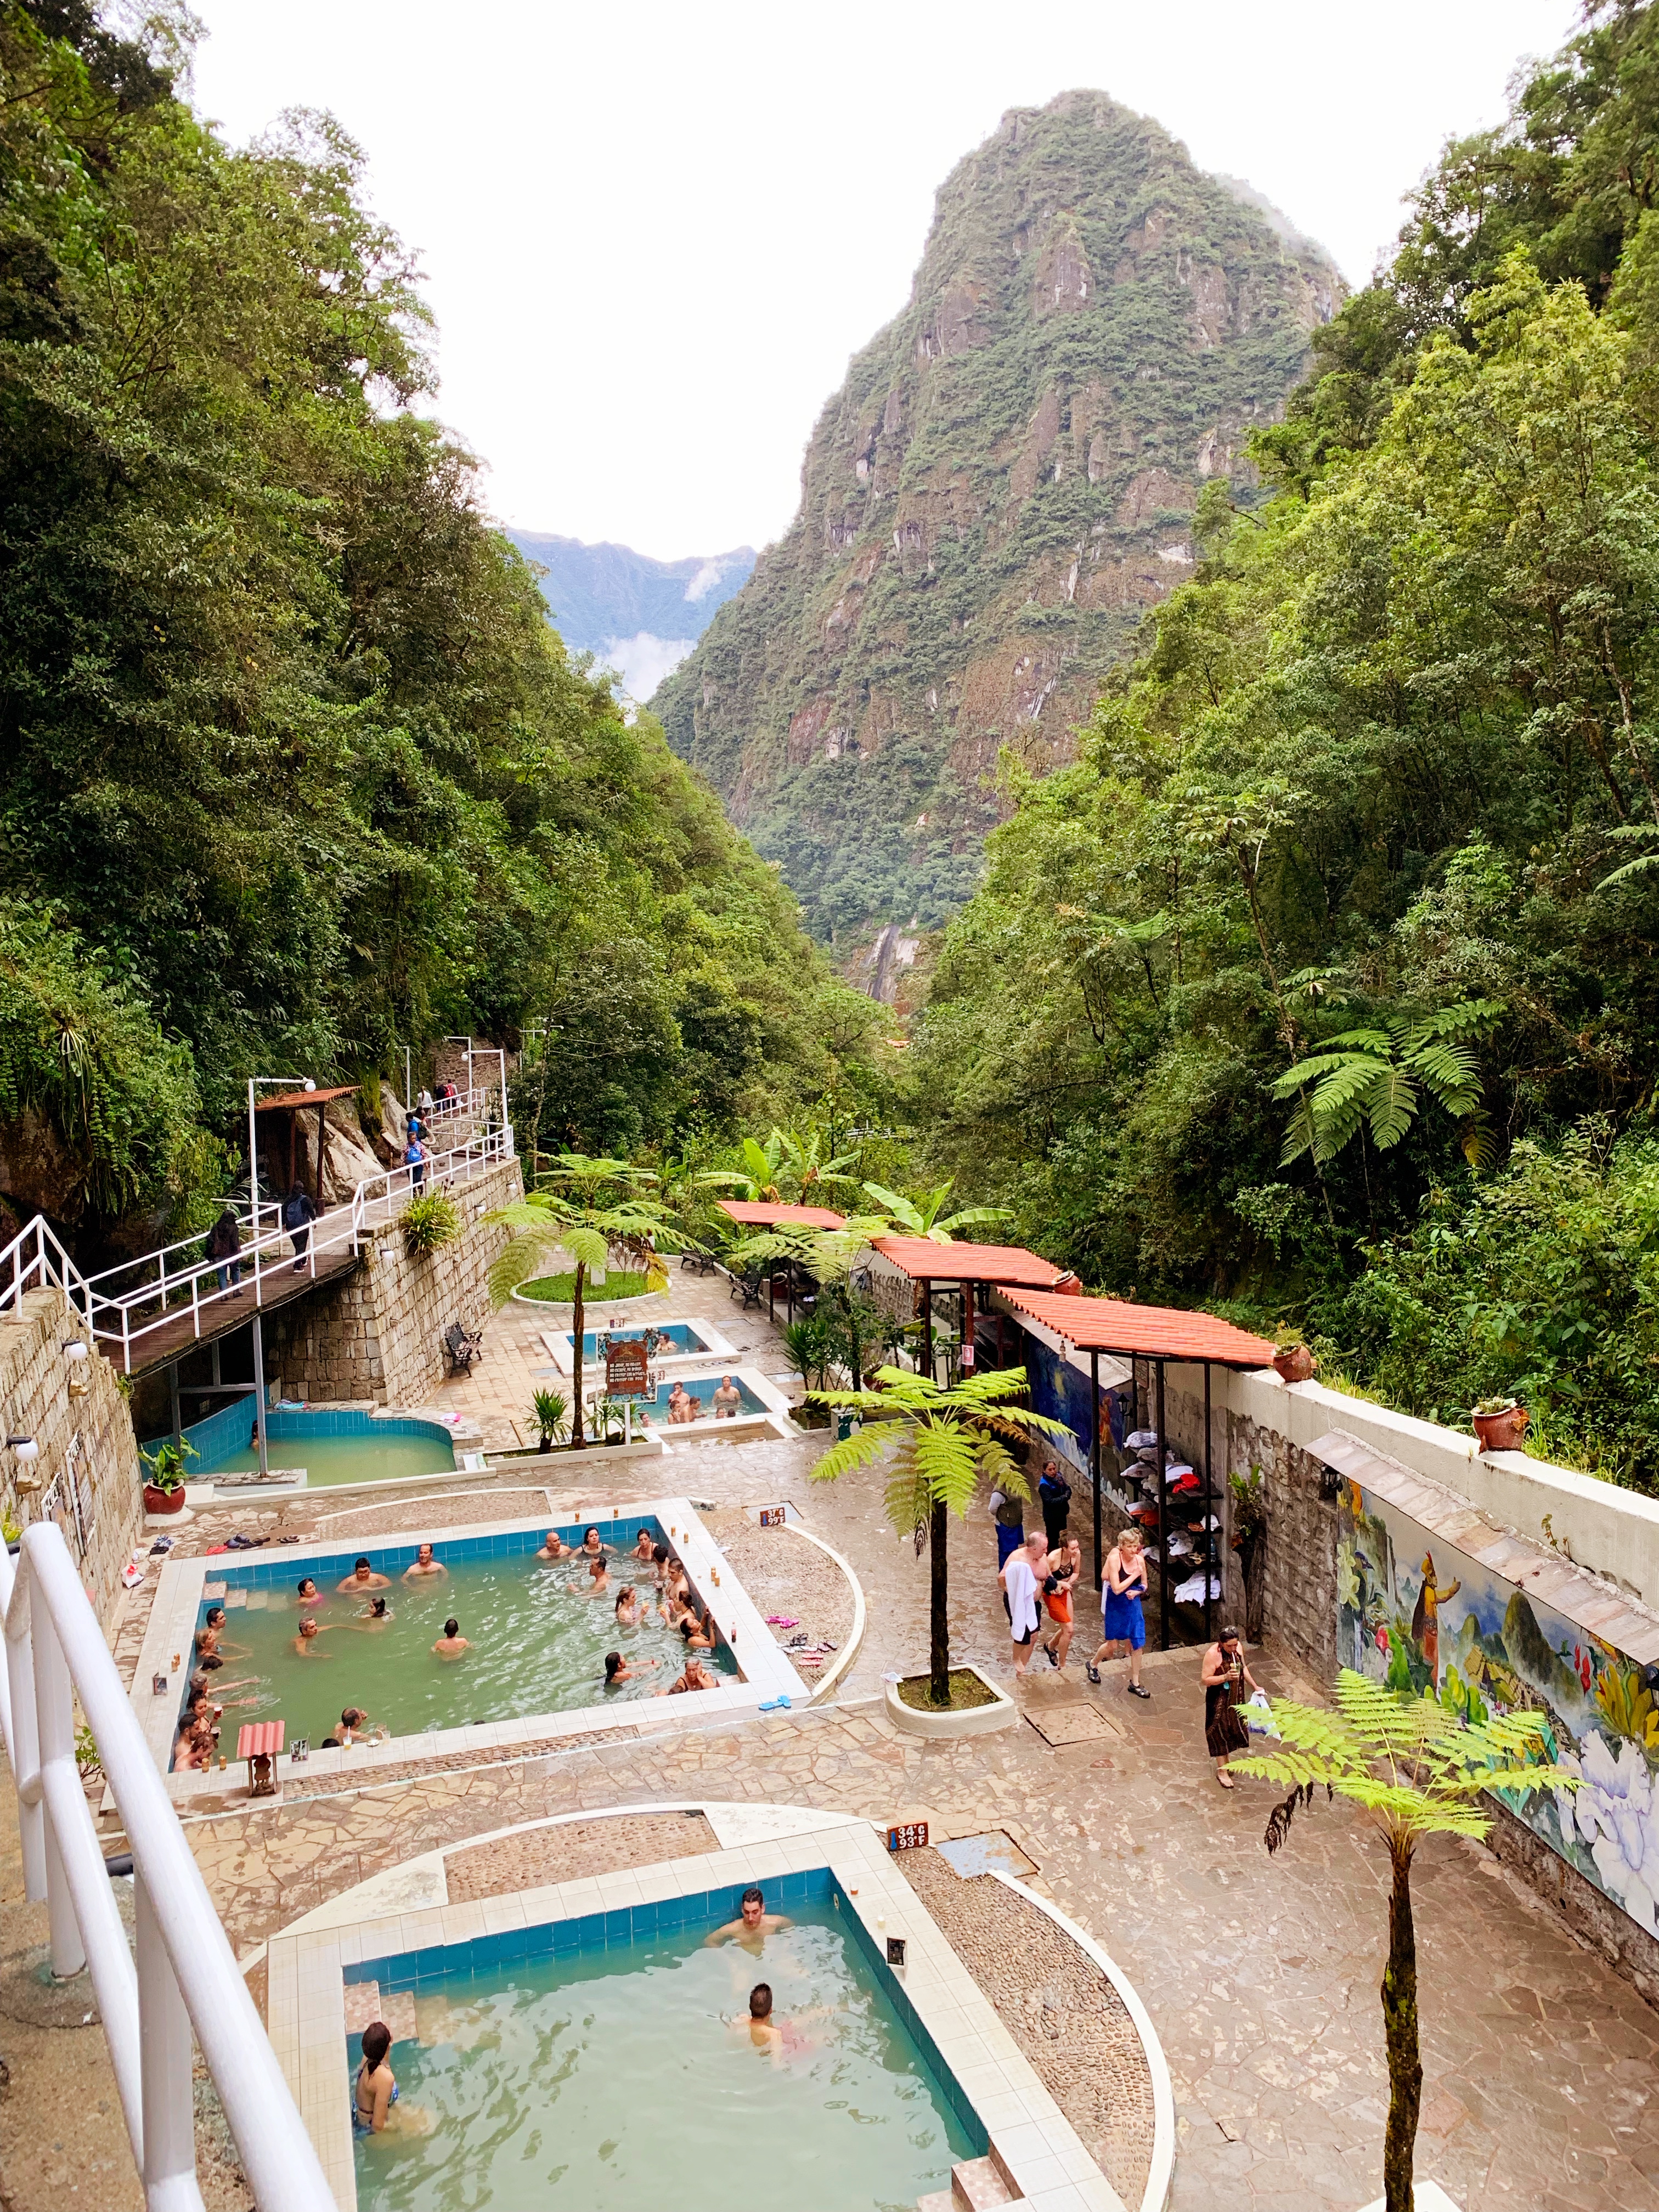 Hot springs at Aguas Calientes